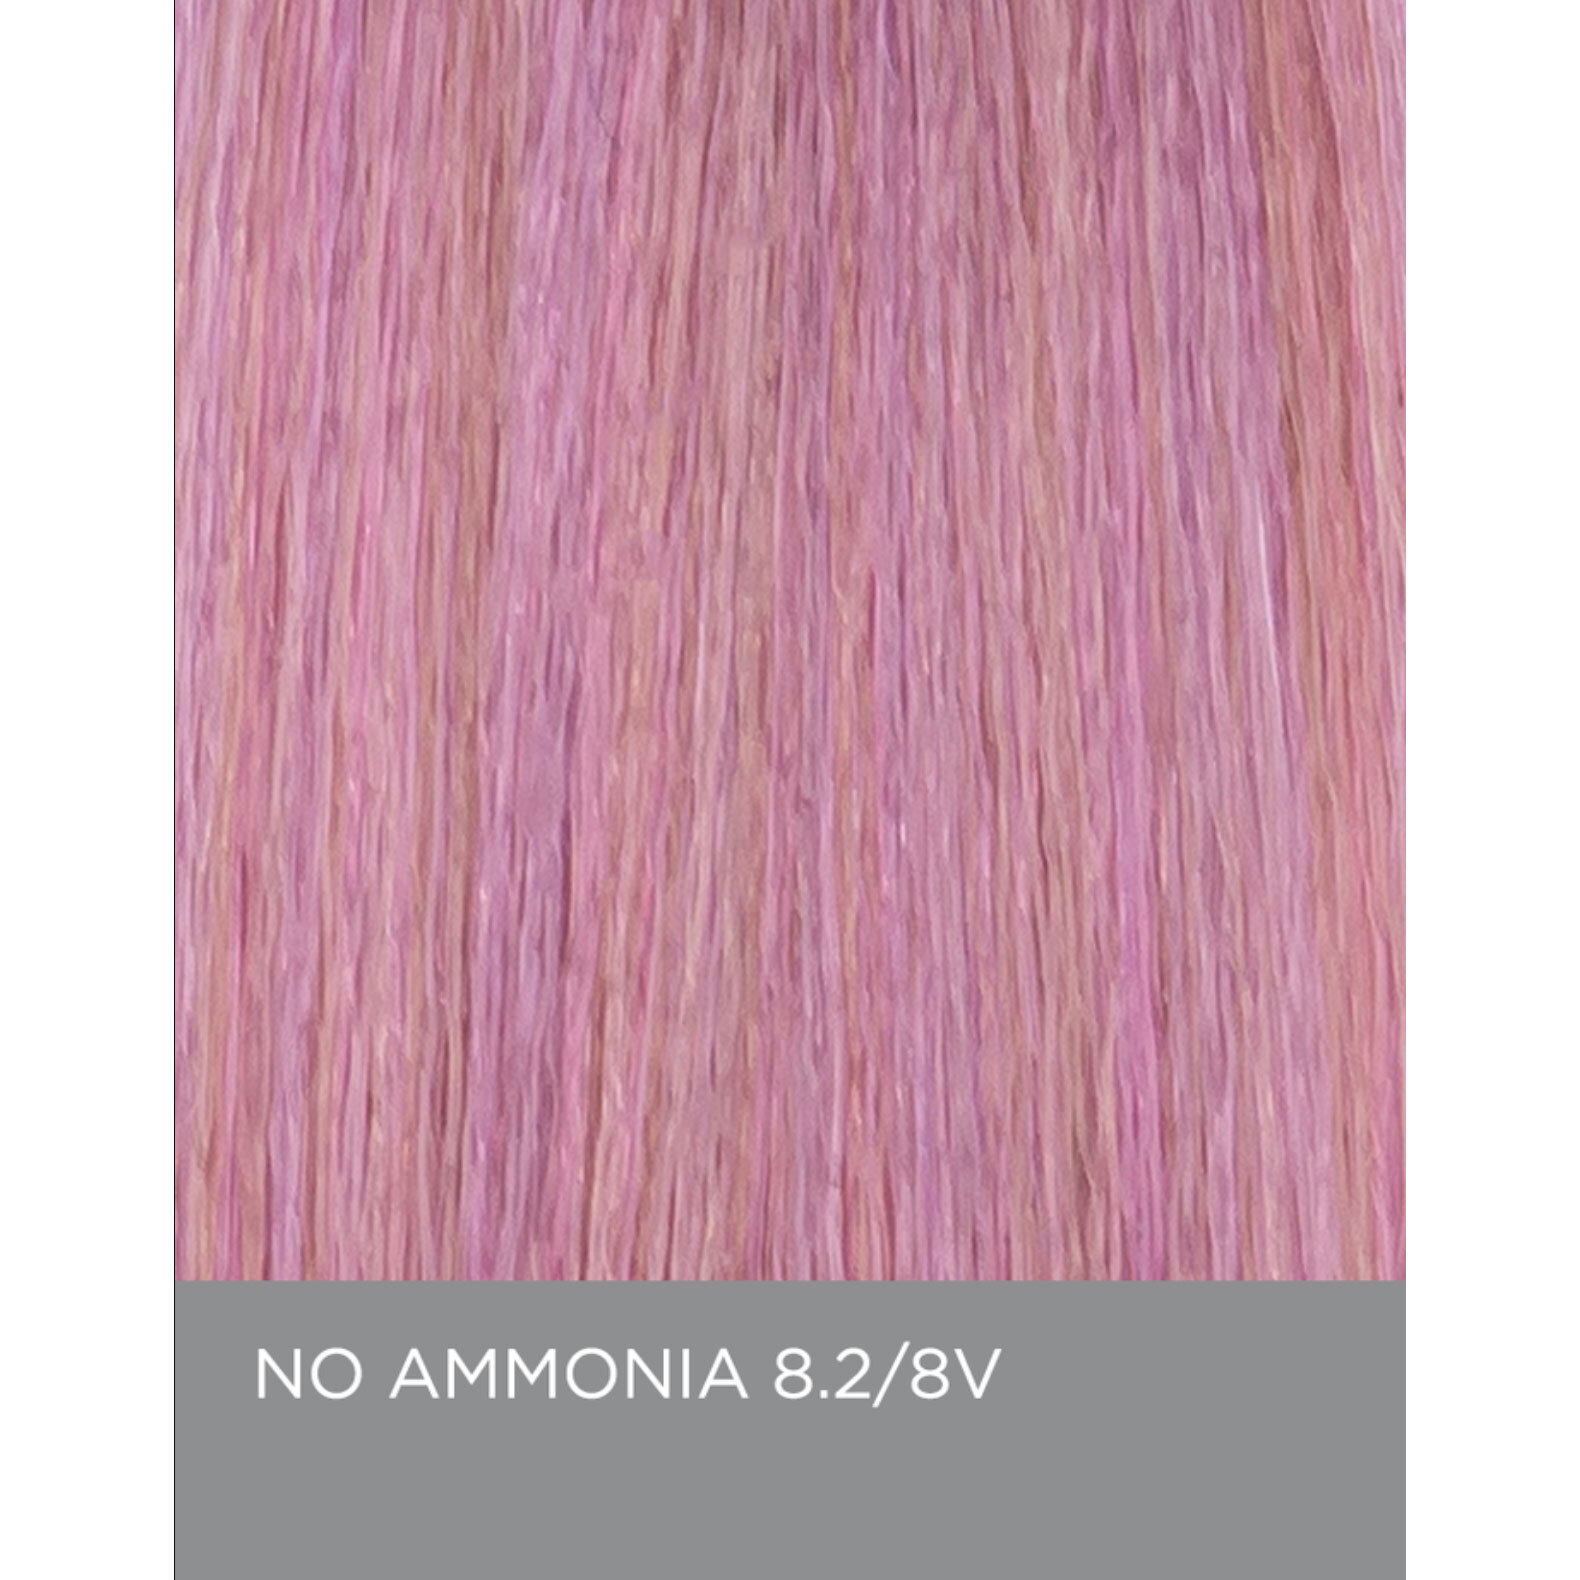 Eufora EuforaColor 8.2 / 8V - Light Violet Blonde - No Ammonia